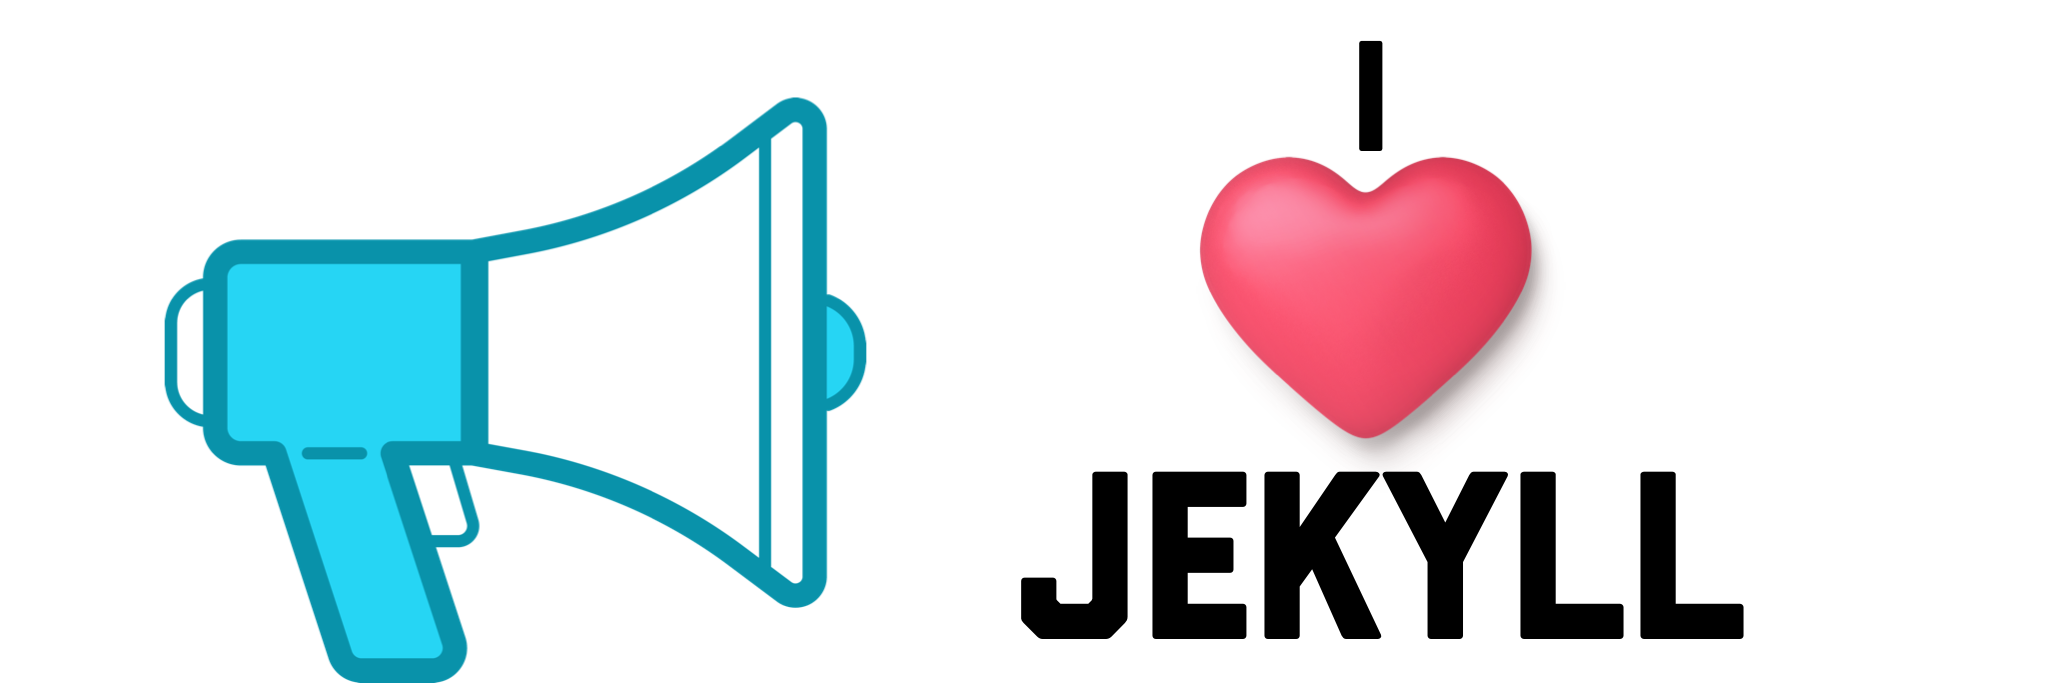 i heart jekyll